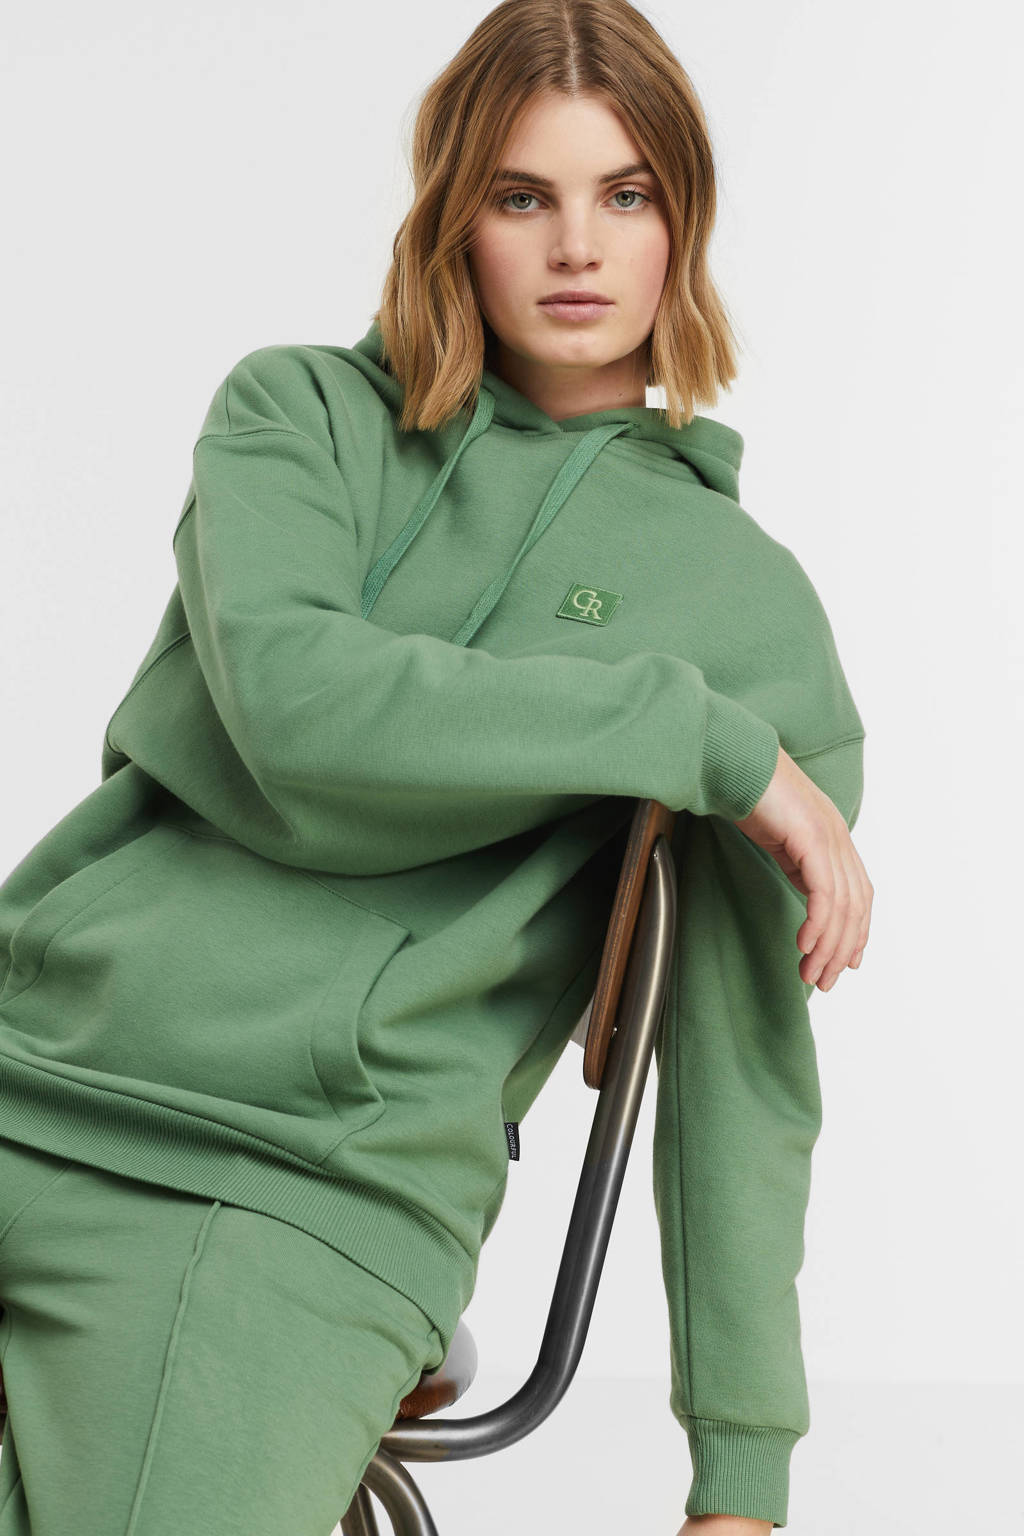 bleek Handschrift voorspelling Colourful Rebel oversized hoodie groen | wehkamp